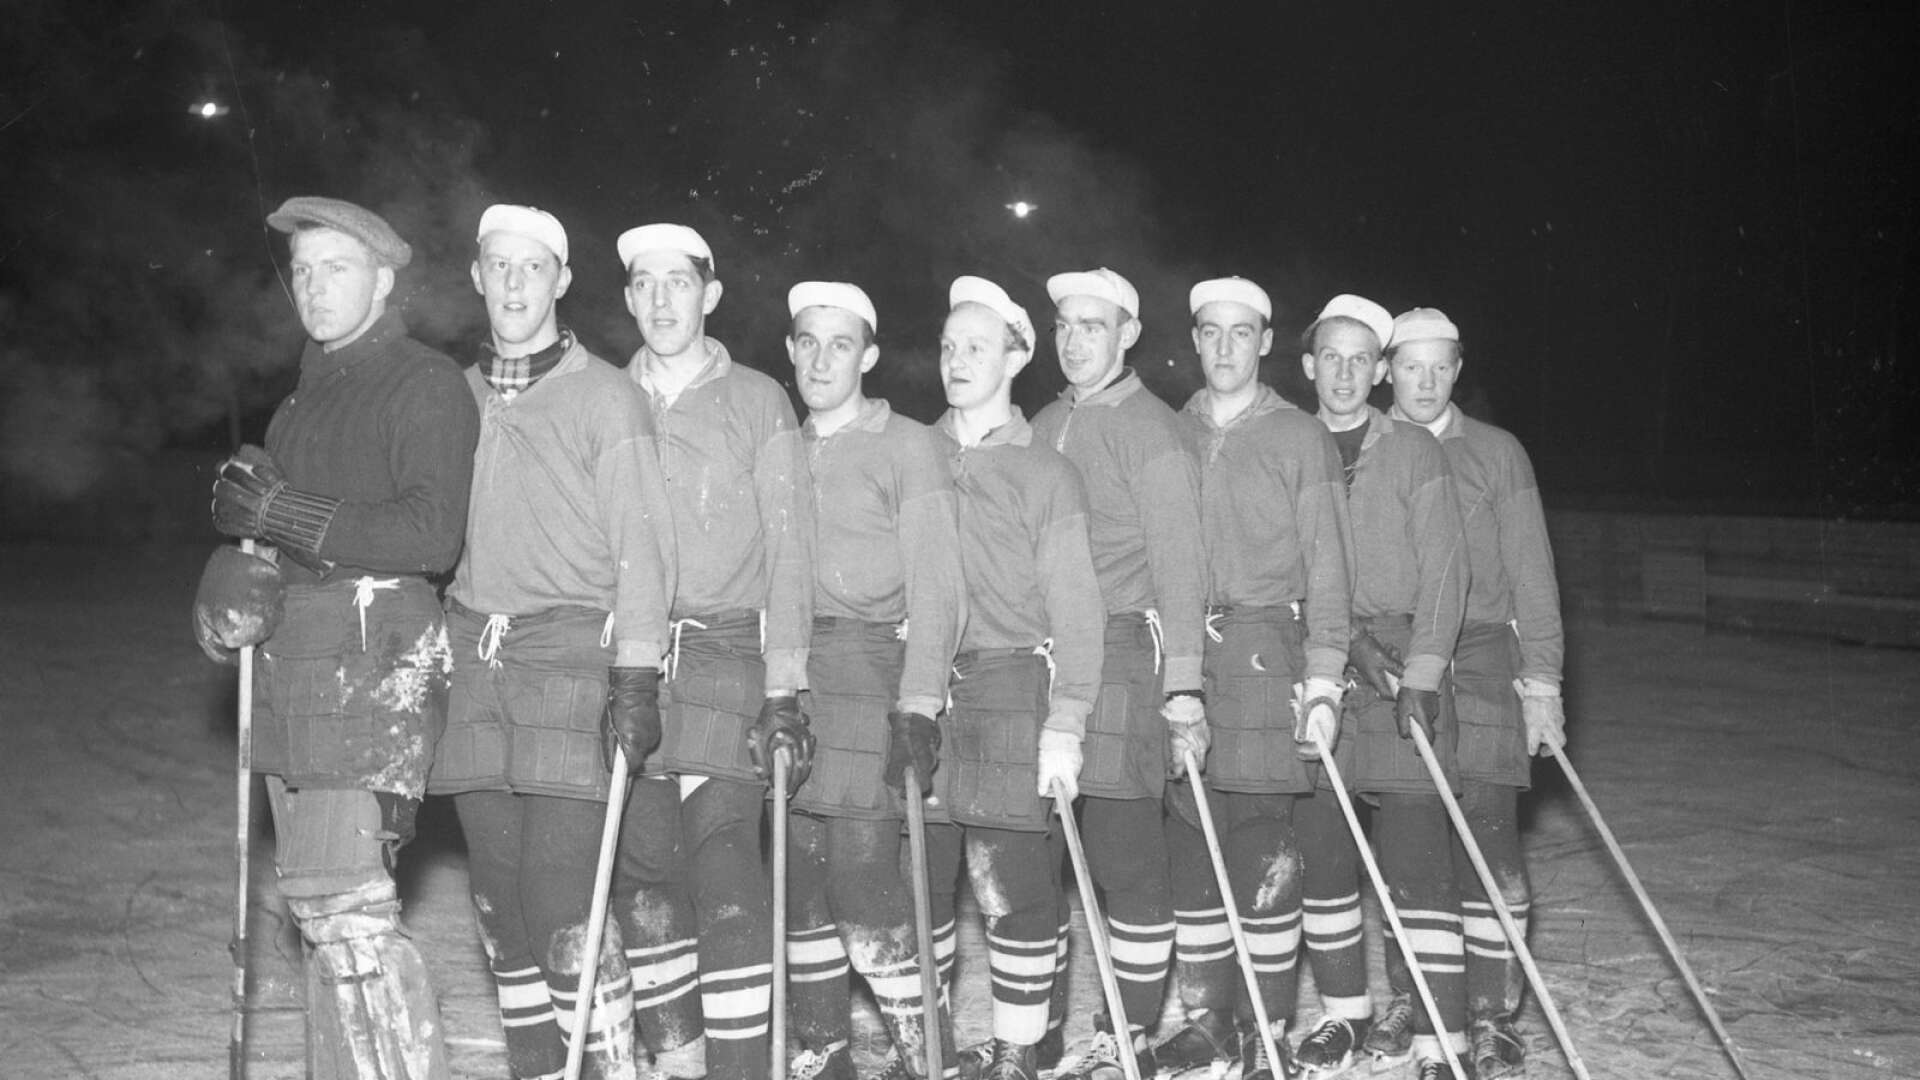 Färjestad BK bildades redan den 10 november 1932 och här syns en del av uppställningen under år 1944. Vid det laget hade klubben haft ishockey på programmet i tre år, efter att bara ha fokuserat på bandy, och man fortsatte fram till 1947 innan man tog en paus fram till 1956.